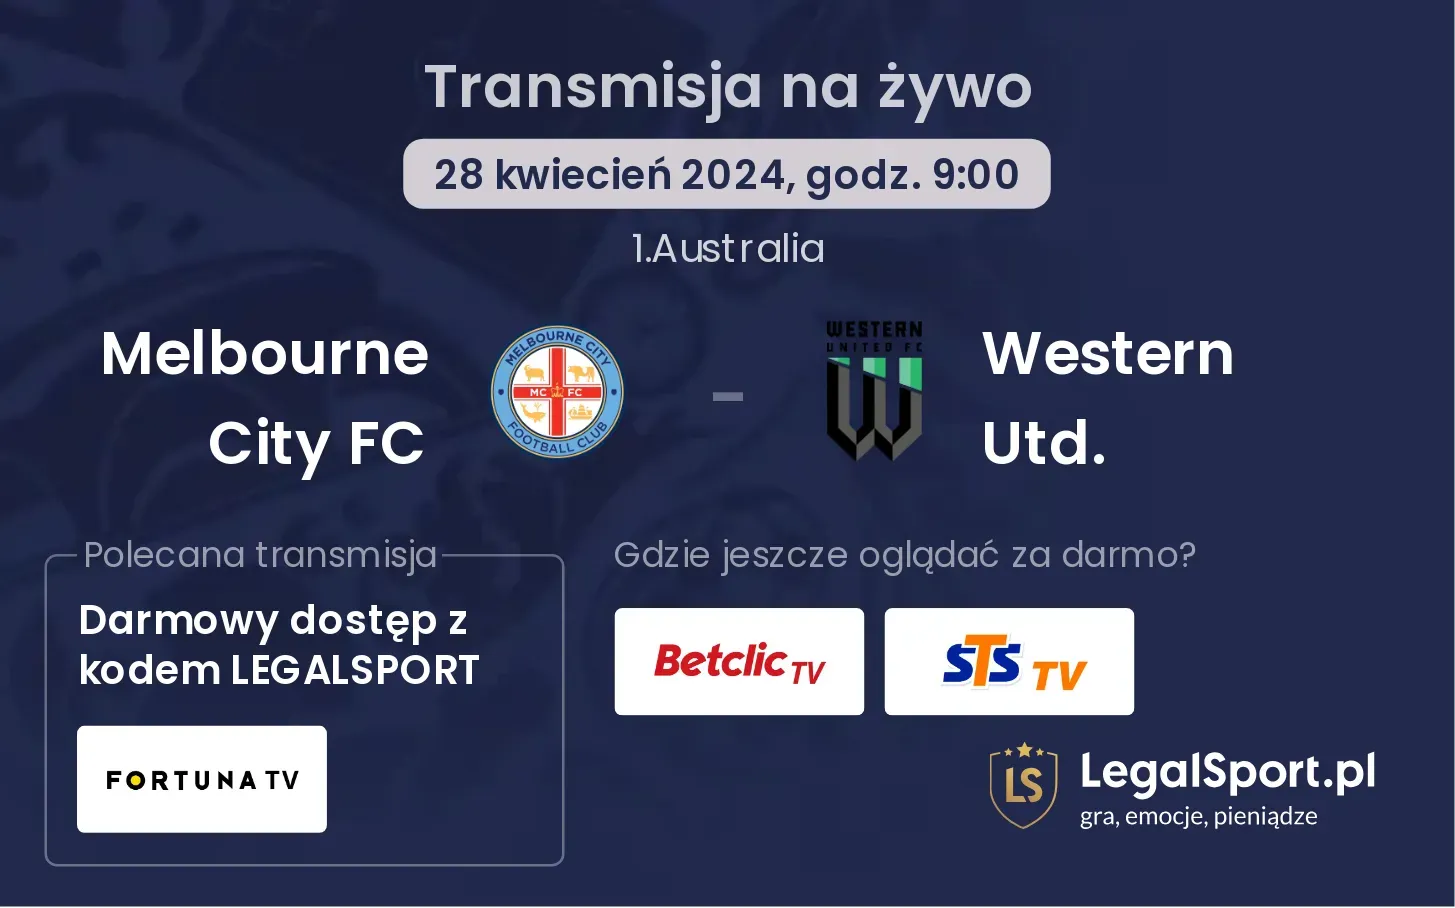 Melbourne City FC - Western Utd. transmisja na żywo